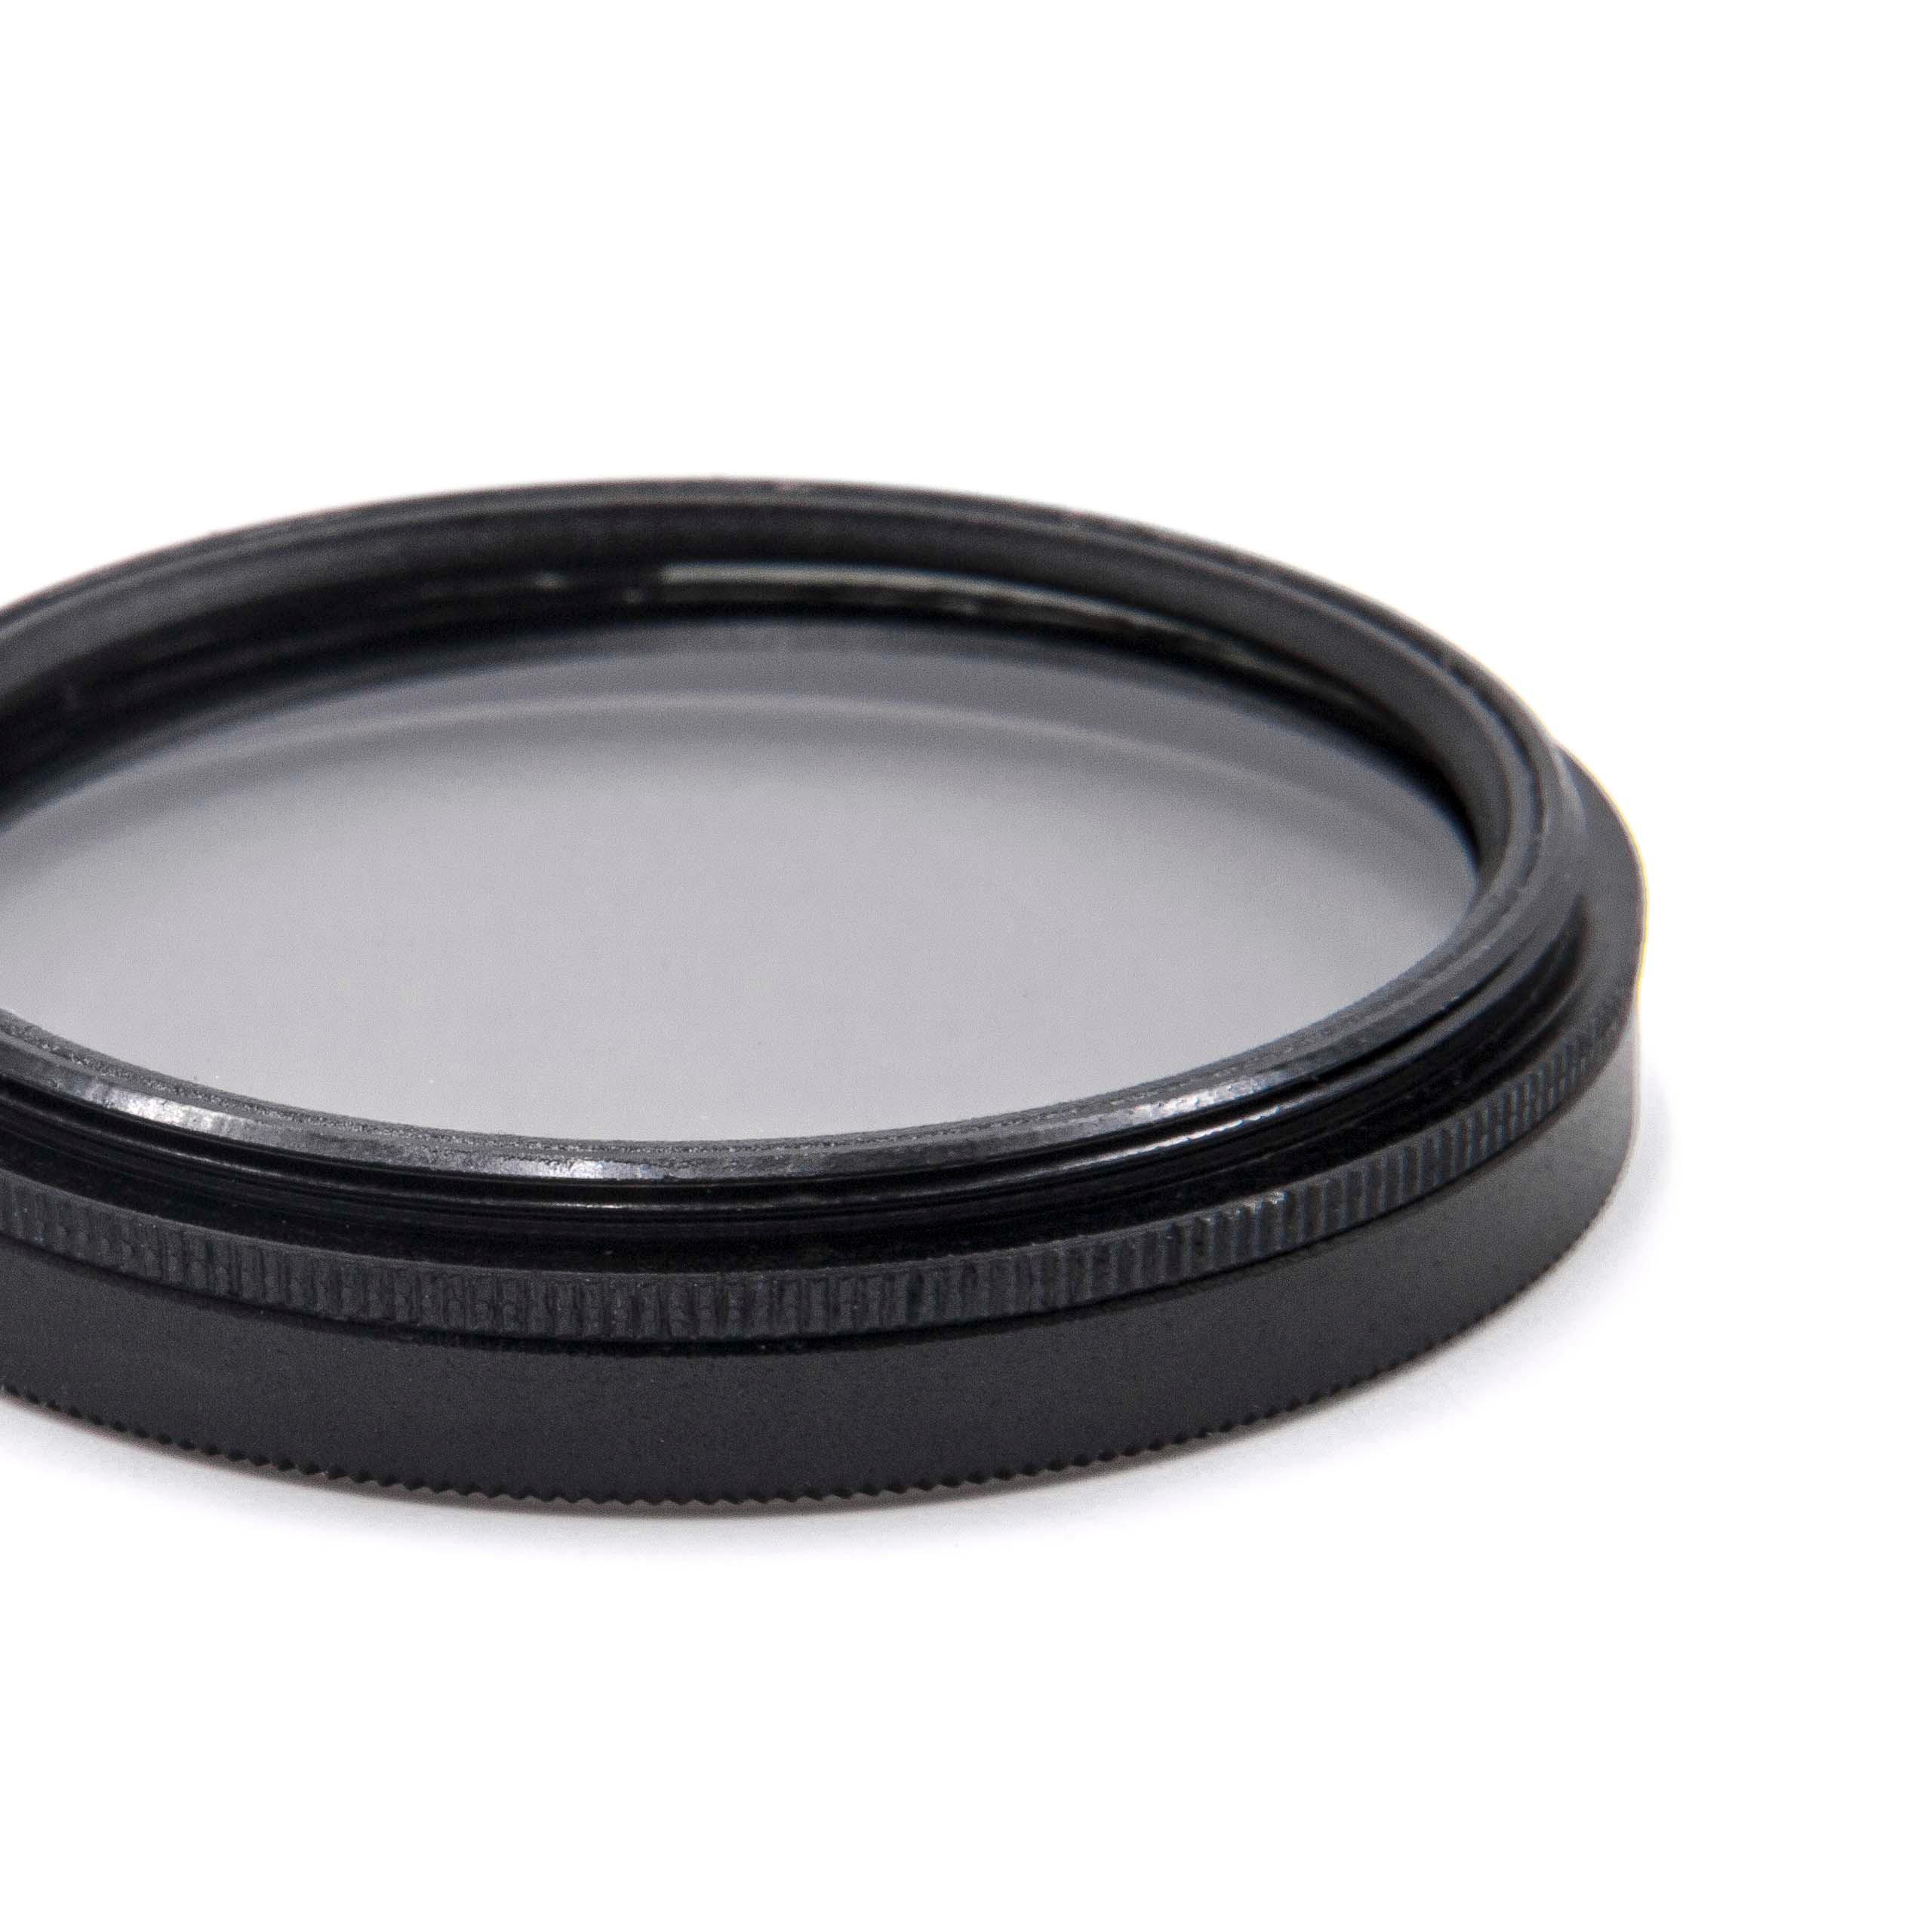 Filtr polaryzacyjny 40,5mm do różnych obiektywów aparatów - filtr CPL 